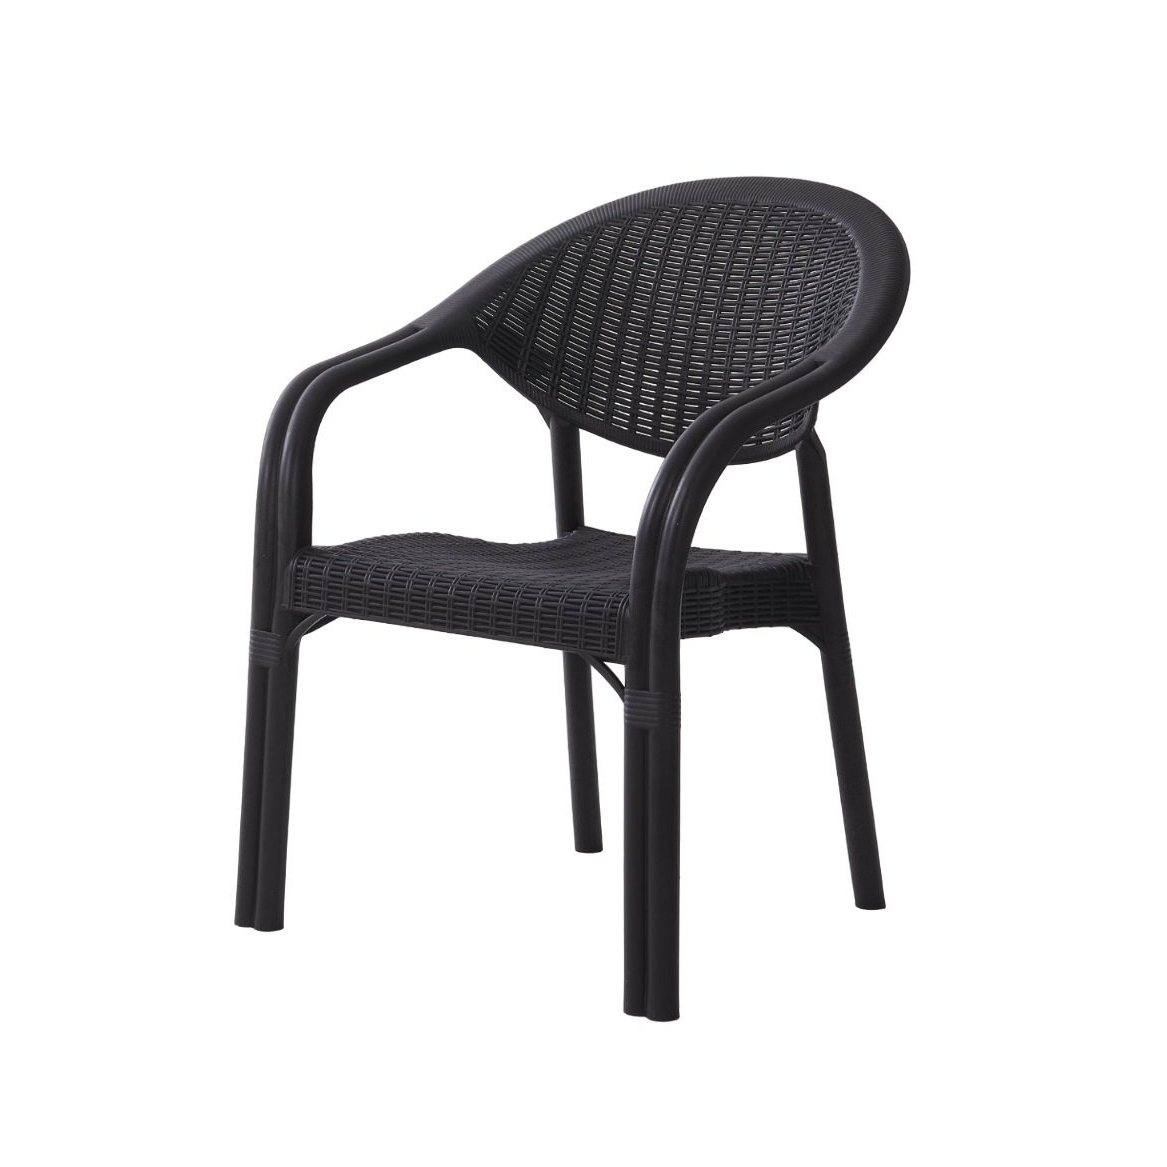 Кресло Heniver Bambo темно-коричневое 64х43,5x82 см кресло ns rattan mavi 57x59x87cm темно коричневое